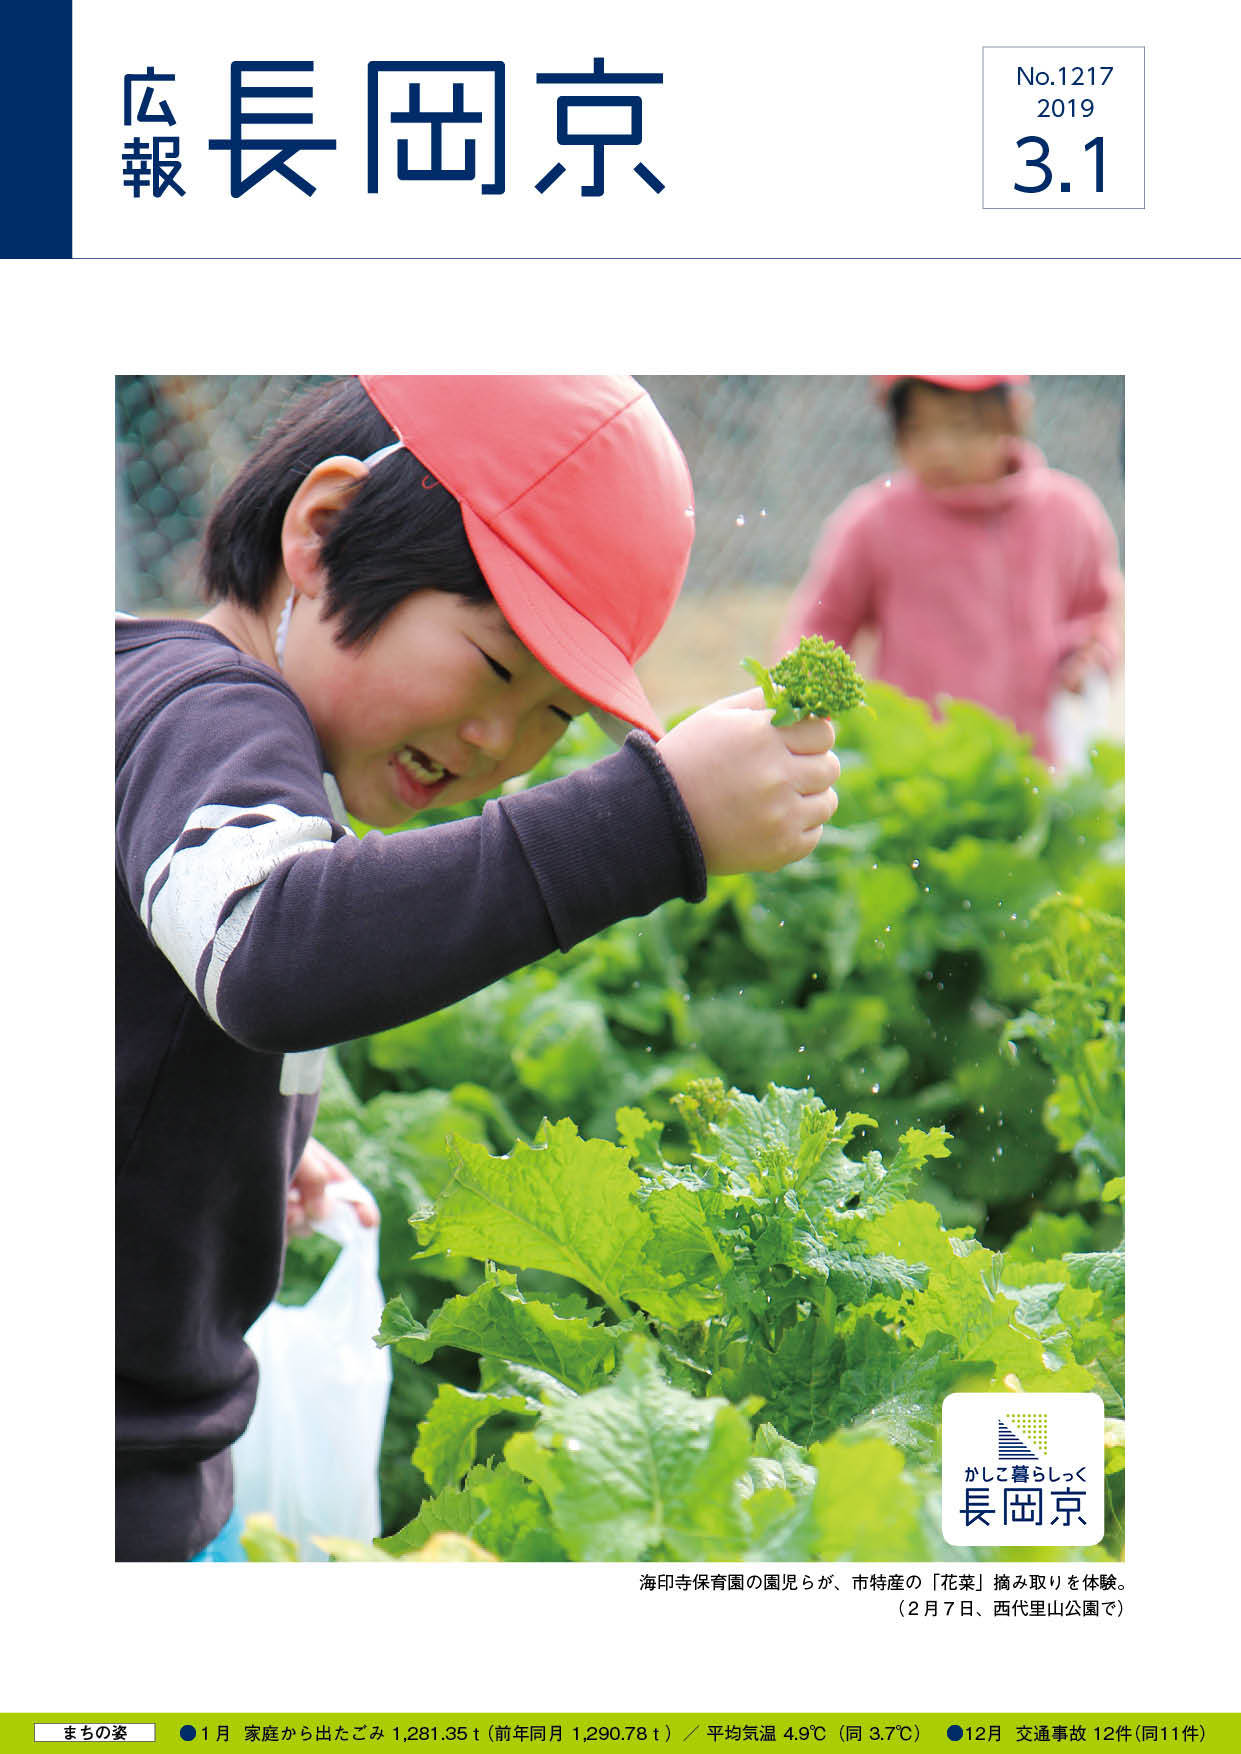 3月1日号の表紙。花菜を摘み取る海印寺保育園の園児